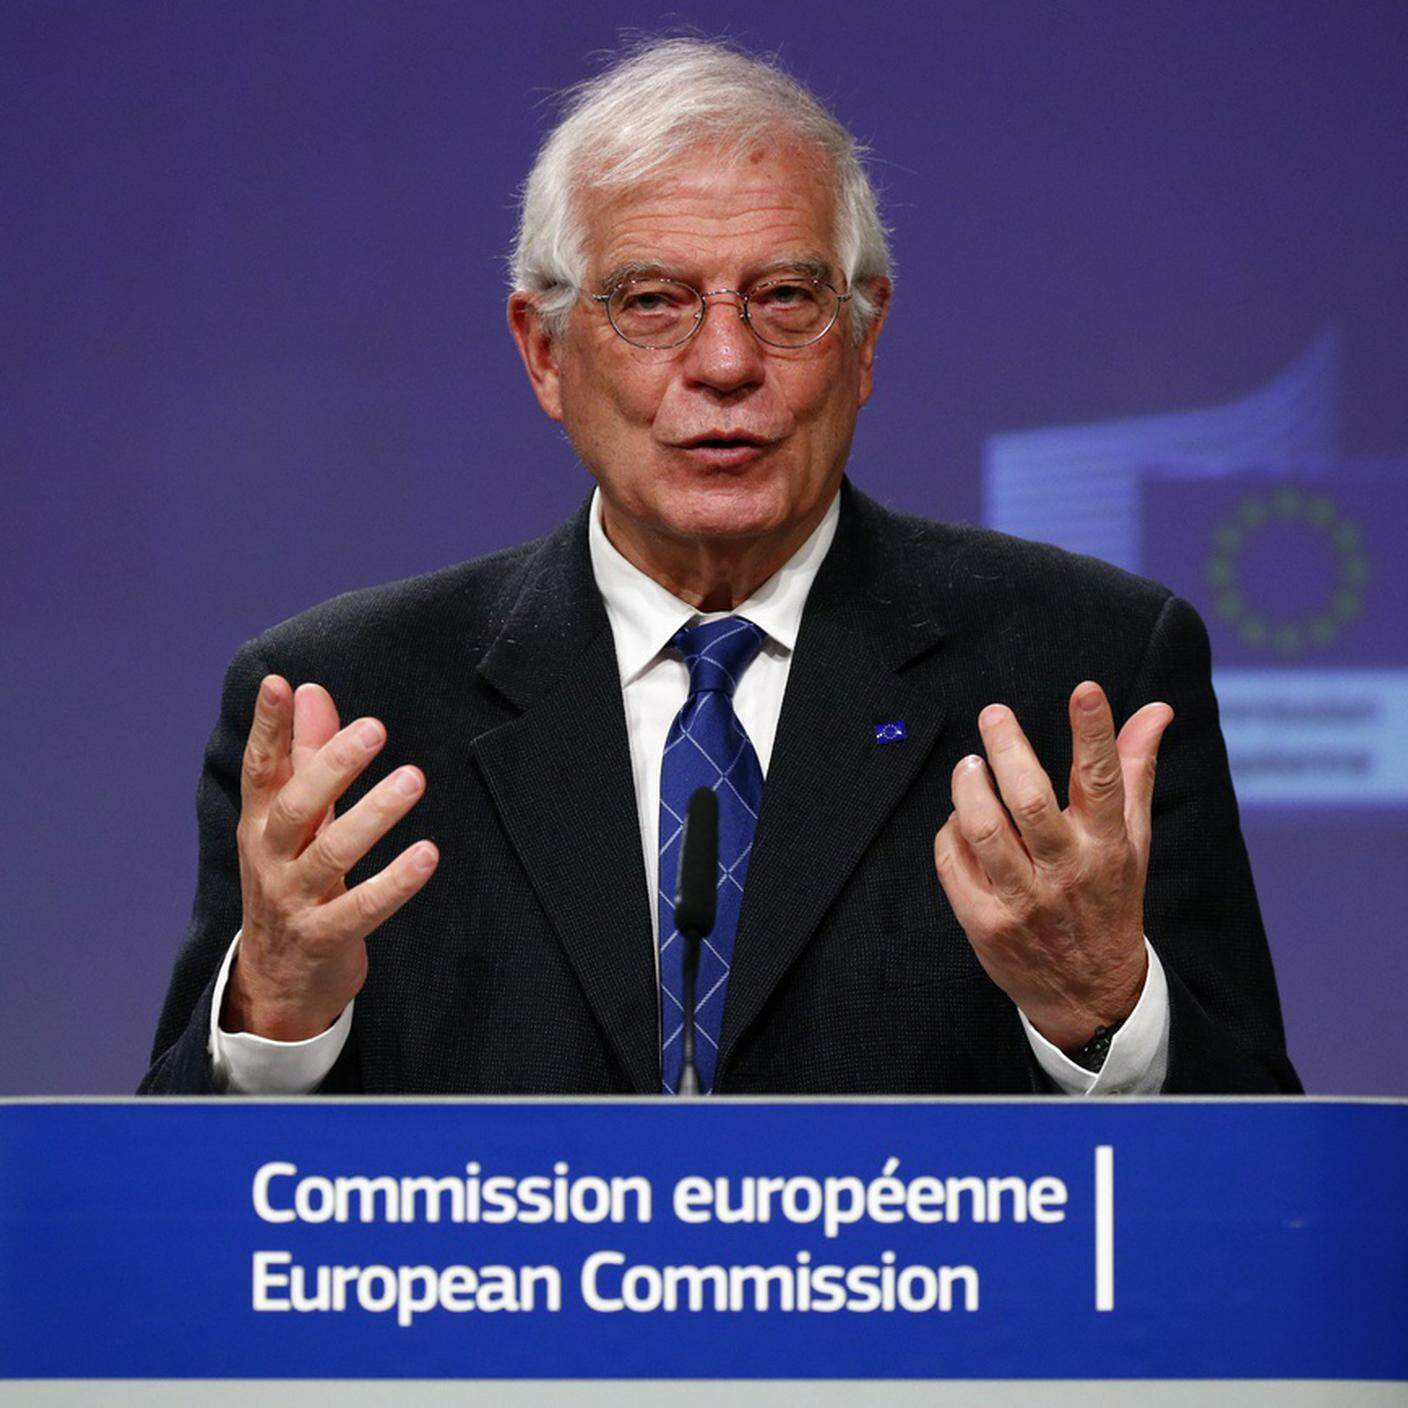 Il capo della diplomazia europea, Josep Borrell, ha definito le relazioni con la Russia come molto tese